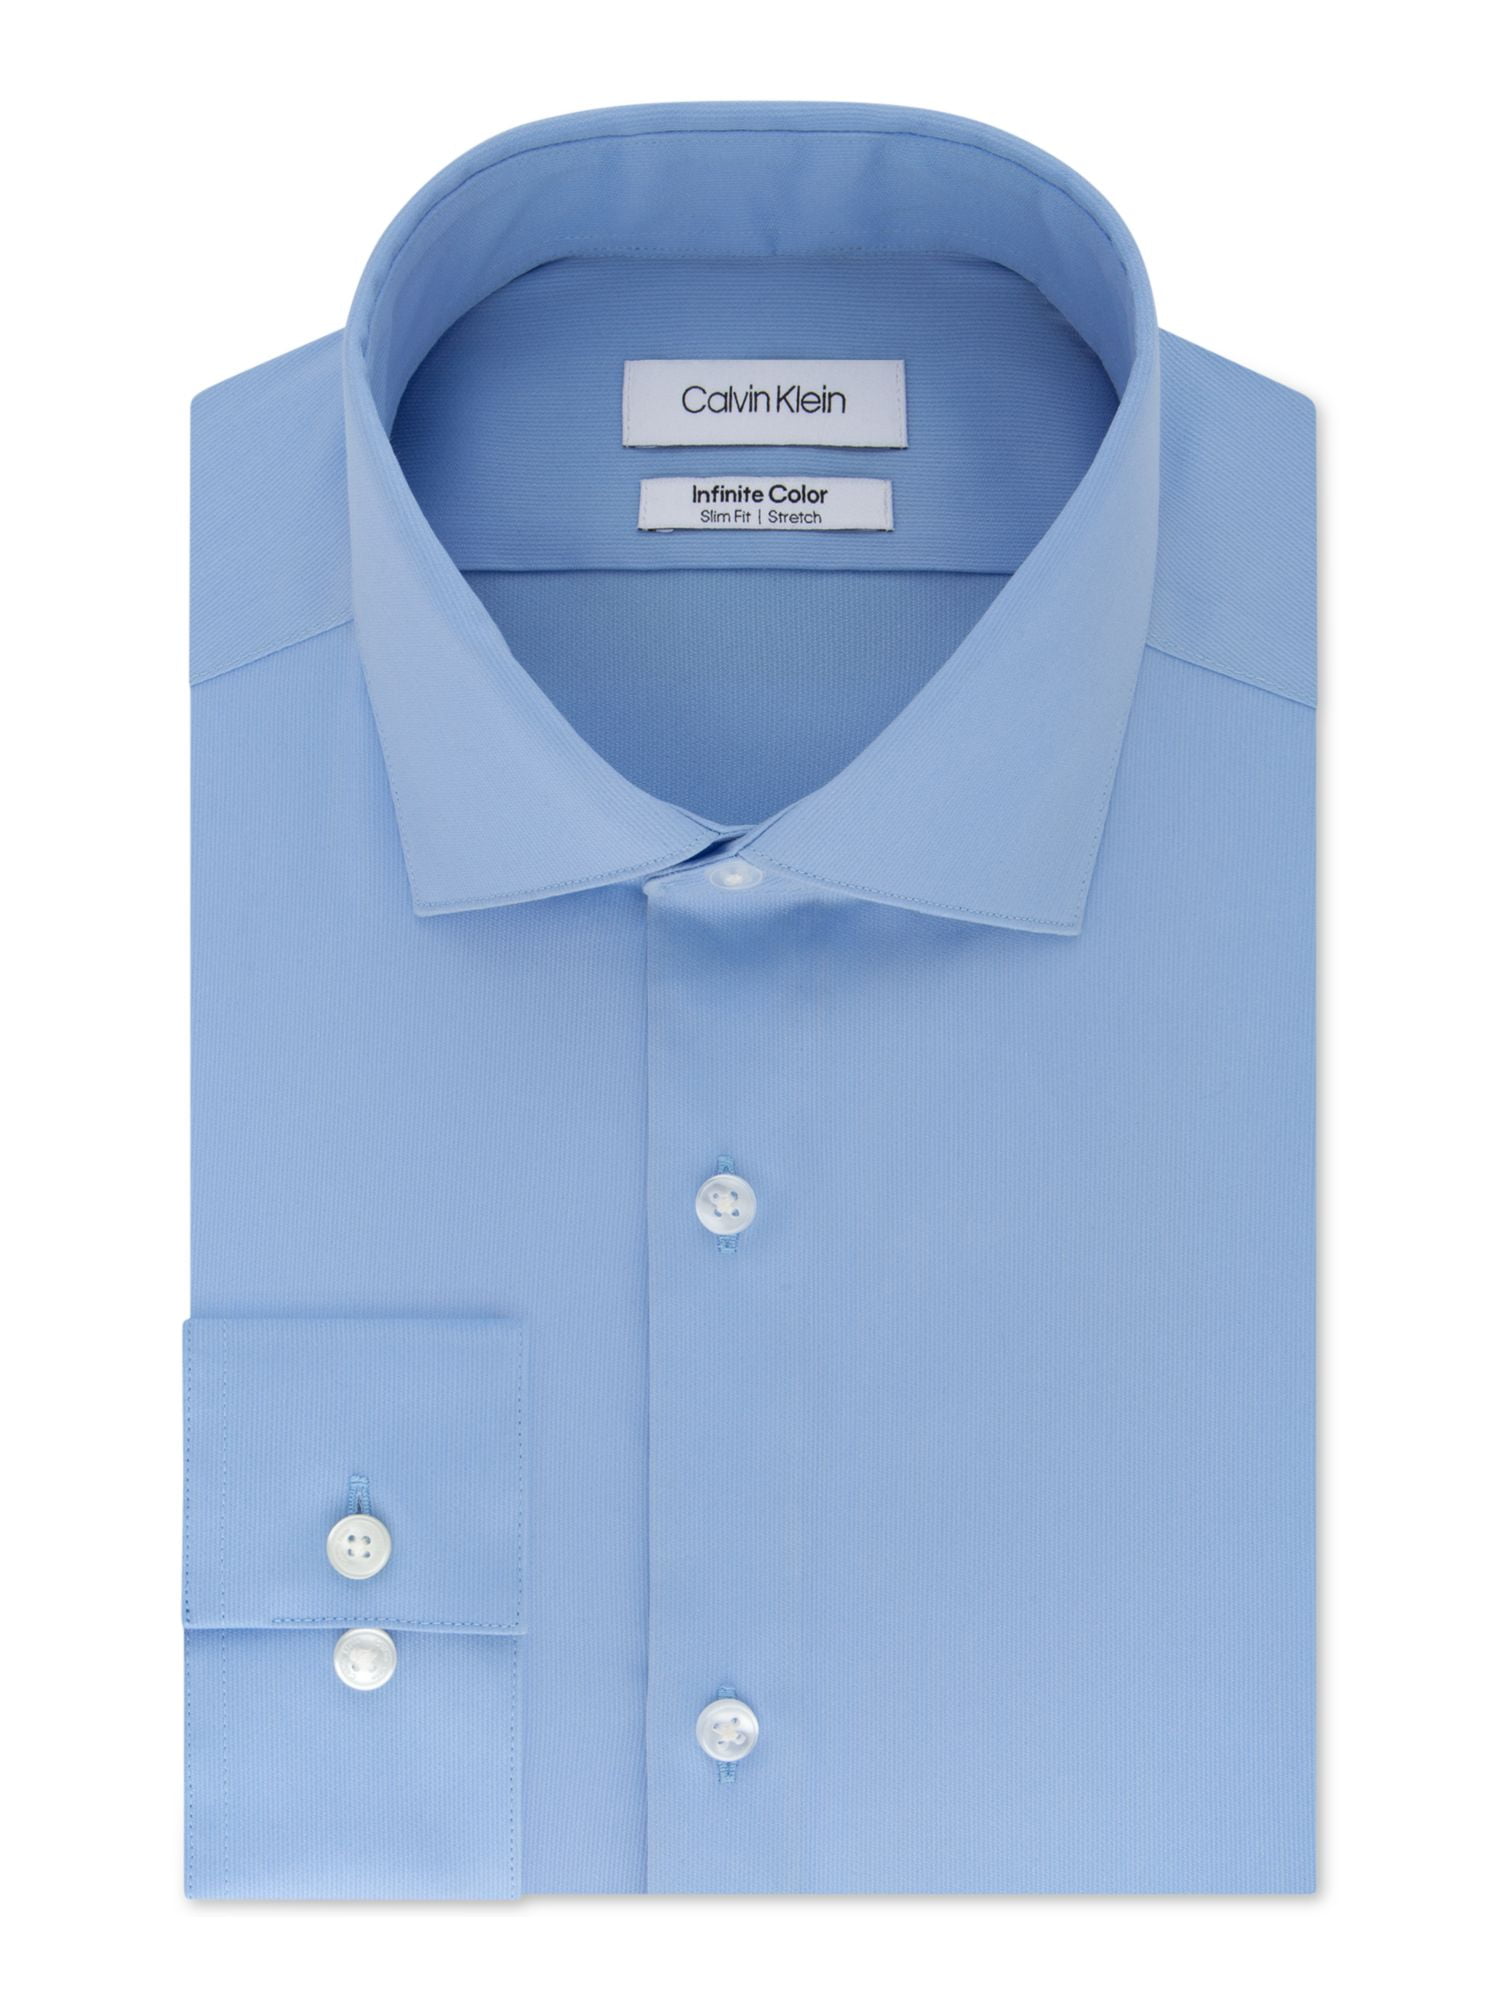 CALVIN KLEIN Mens Light Blue Collared Slim Fit Dress Shirt XL 17- 36/37 -  